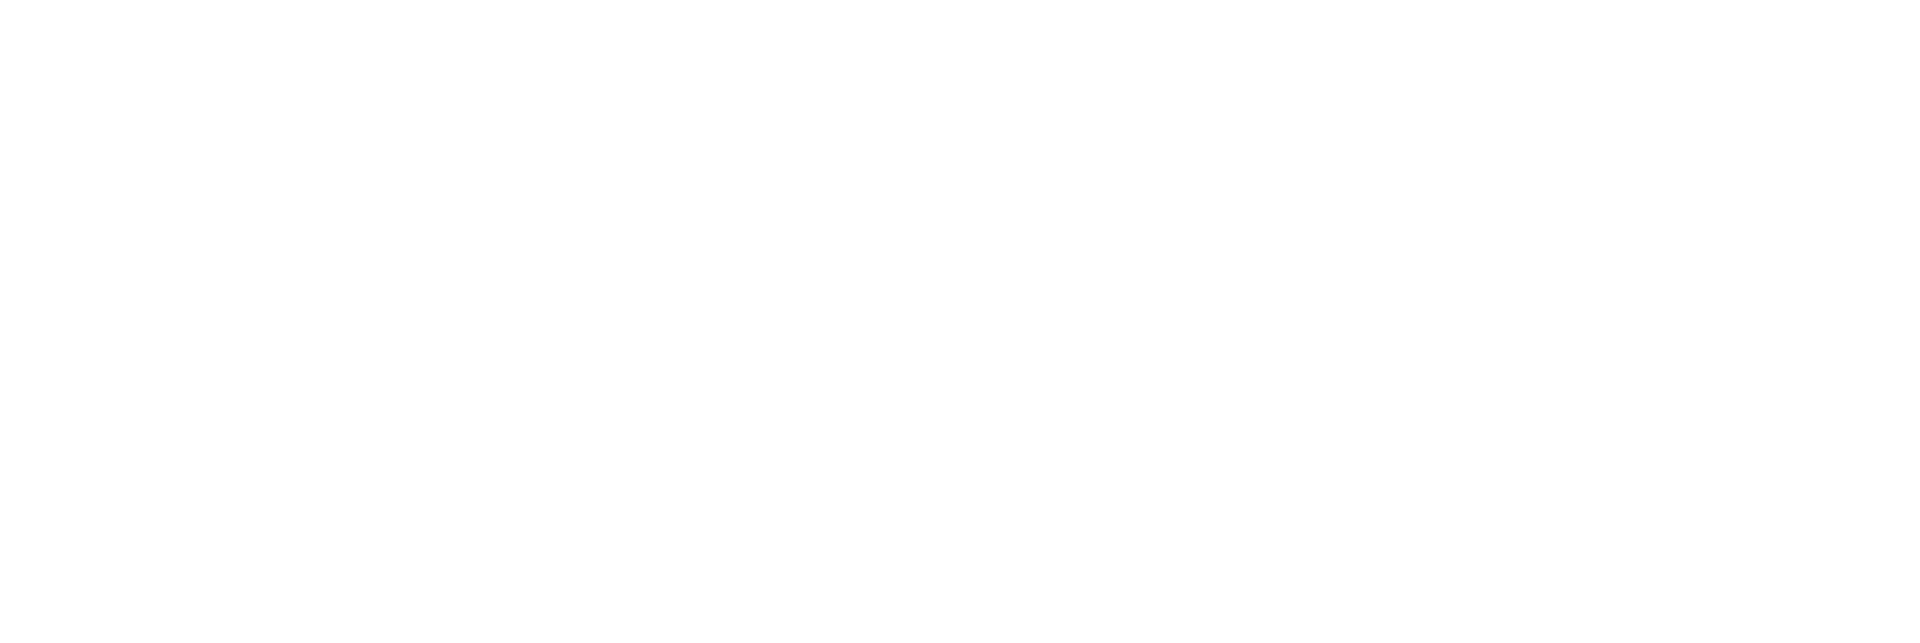 Free Chapel Preschool